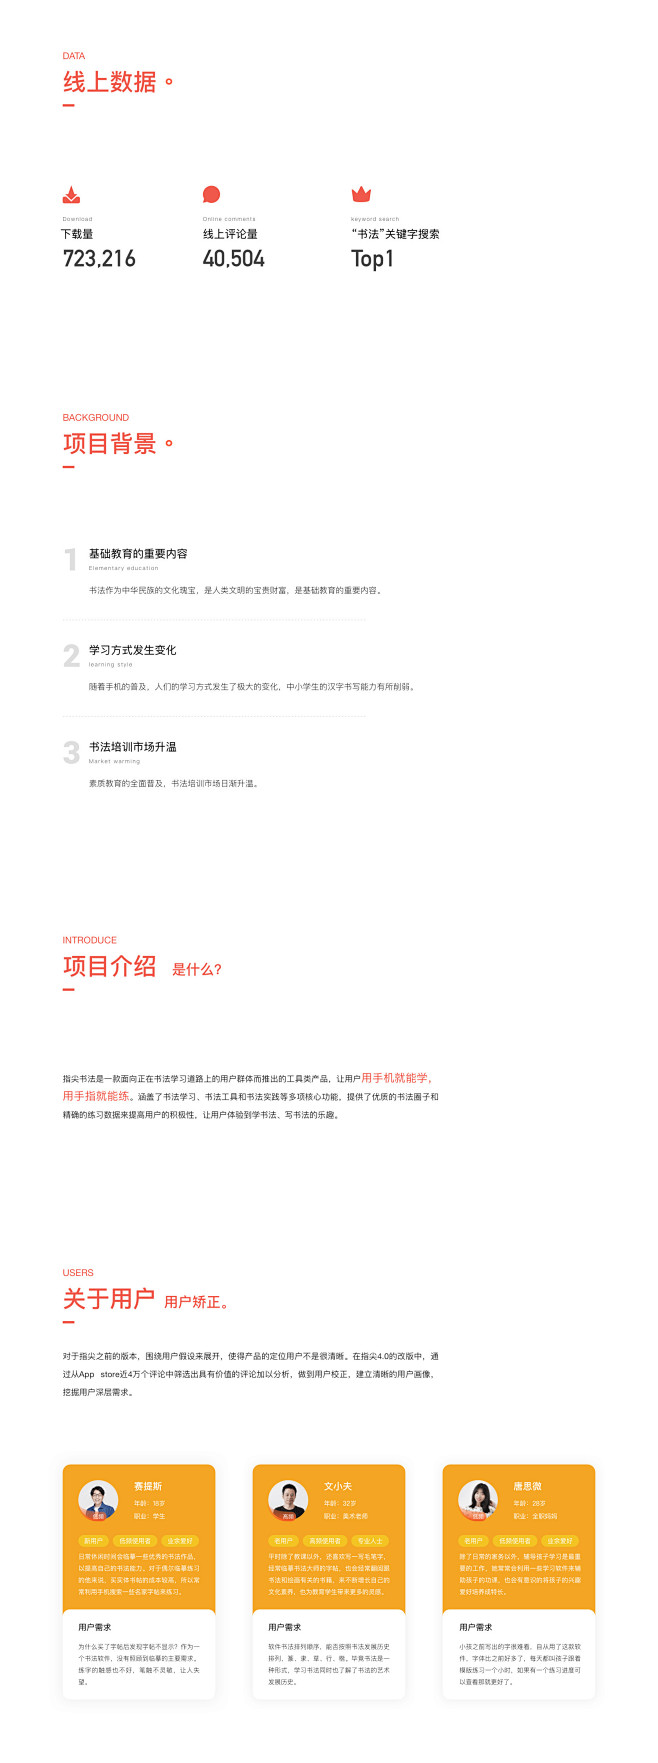 设计作品集_可交互版本-UI中国用户体验...